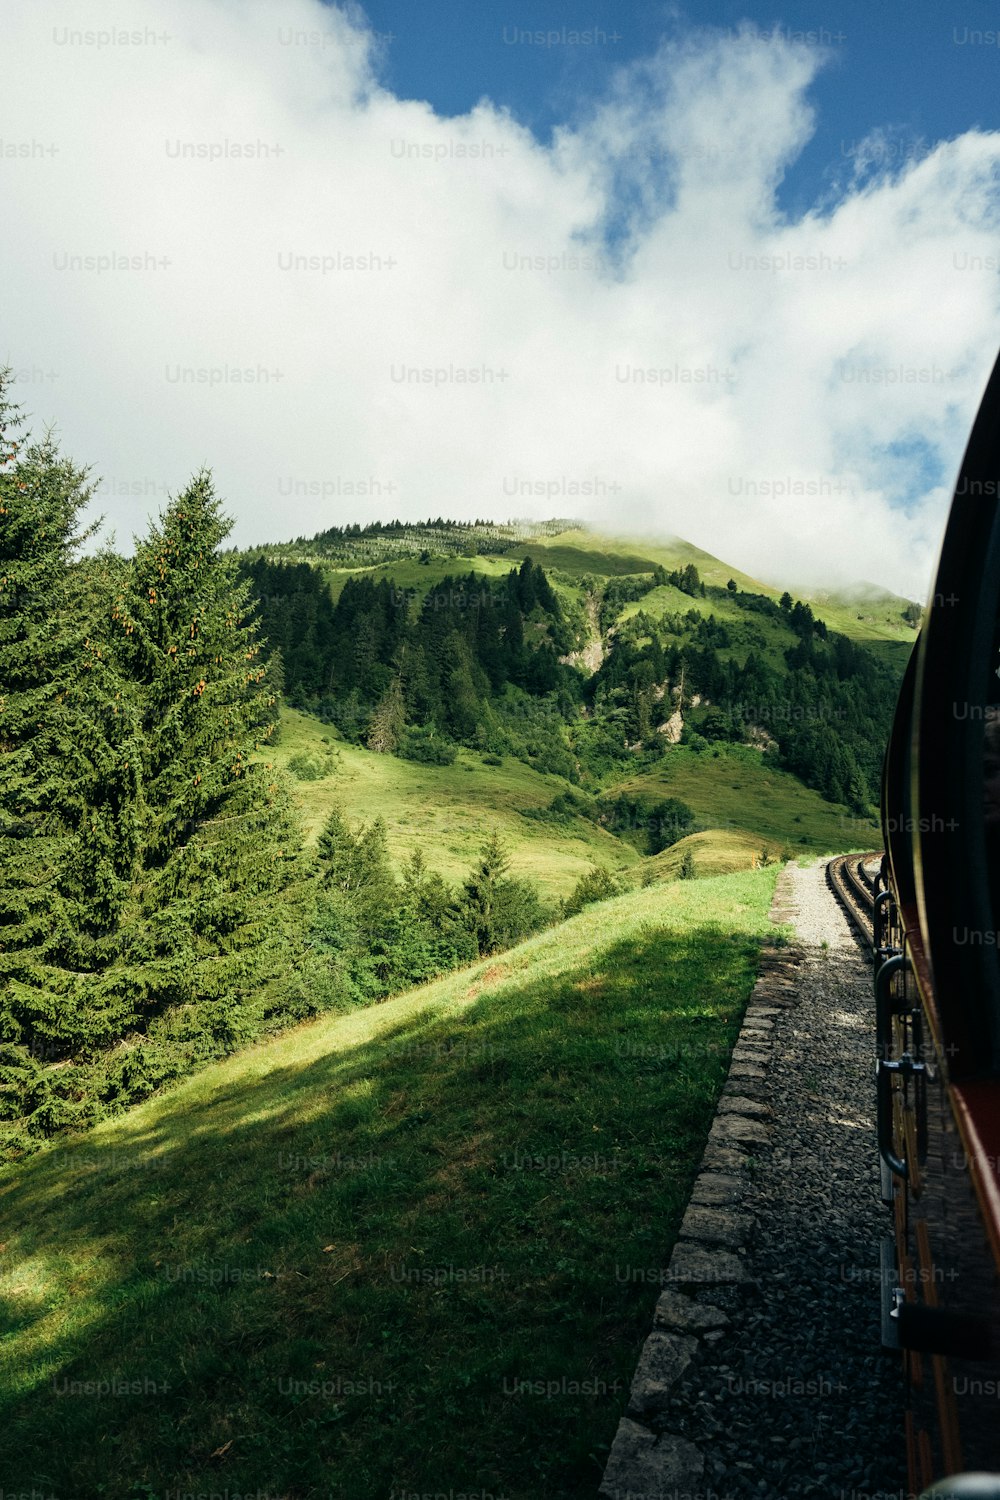 Un train voyageant à travers une campagne verdoyante